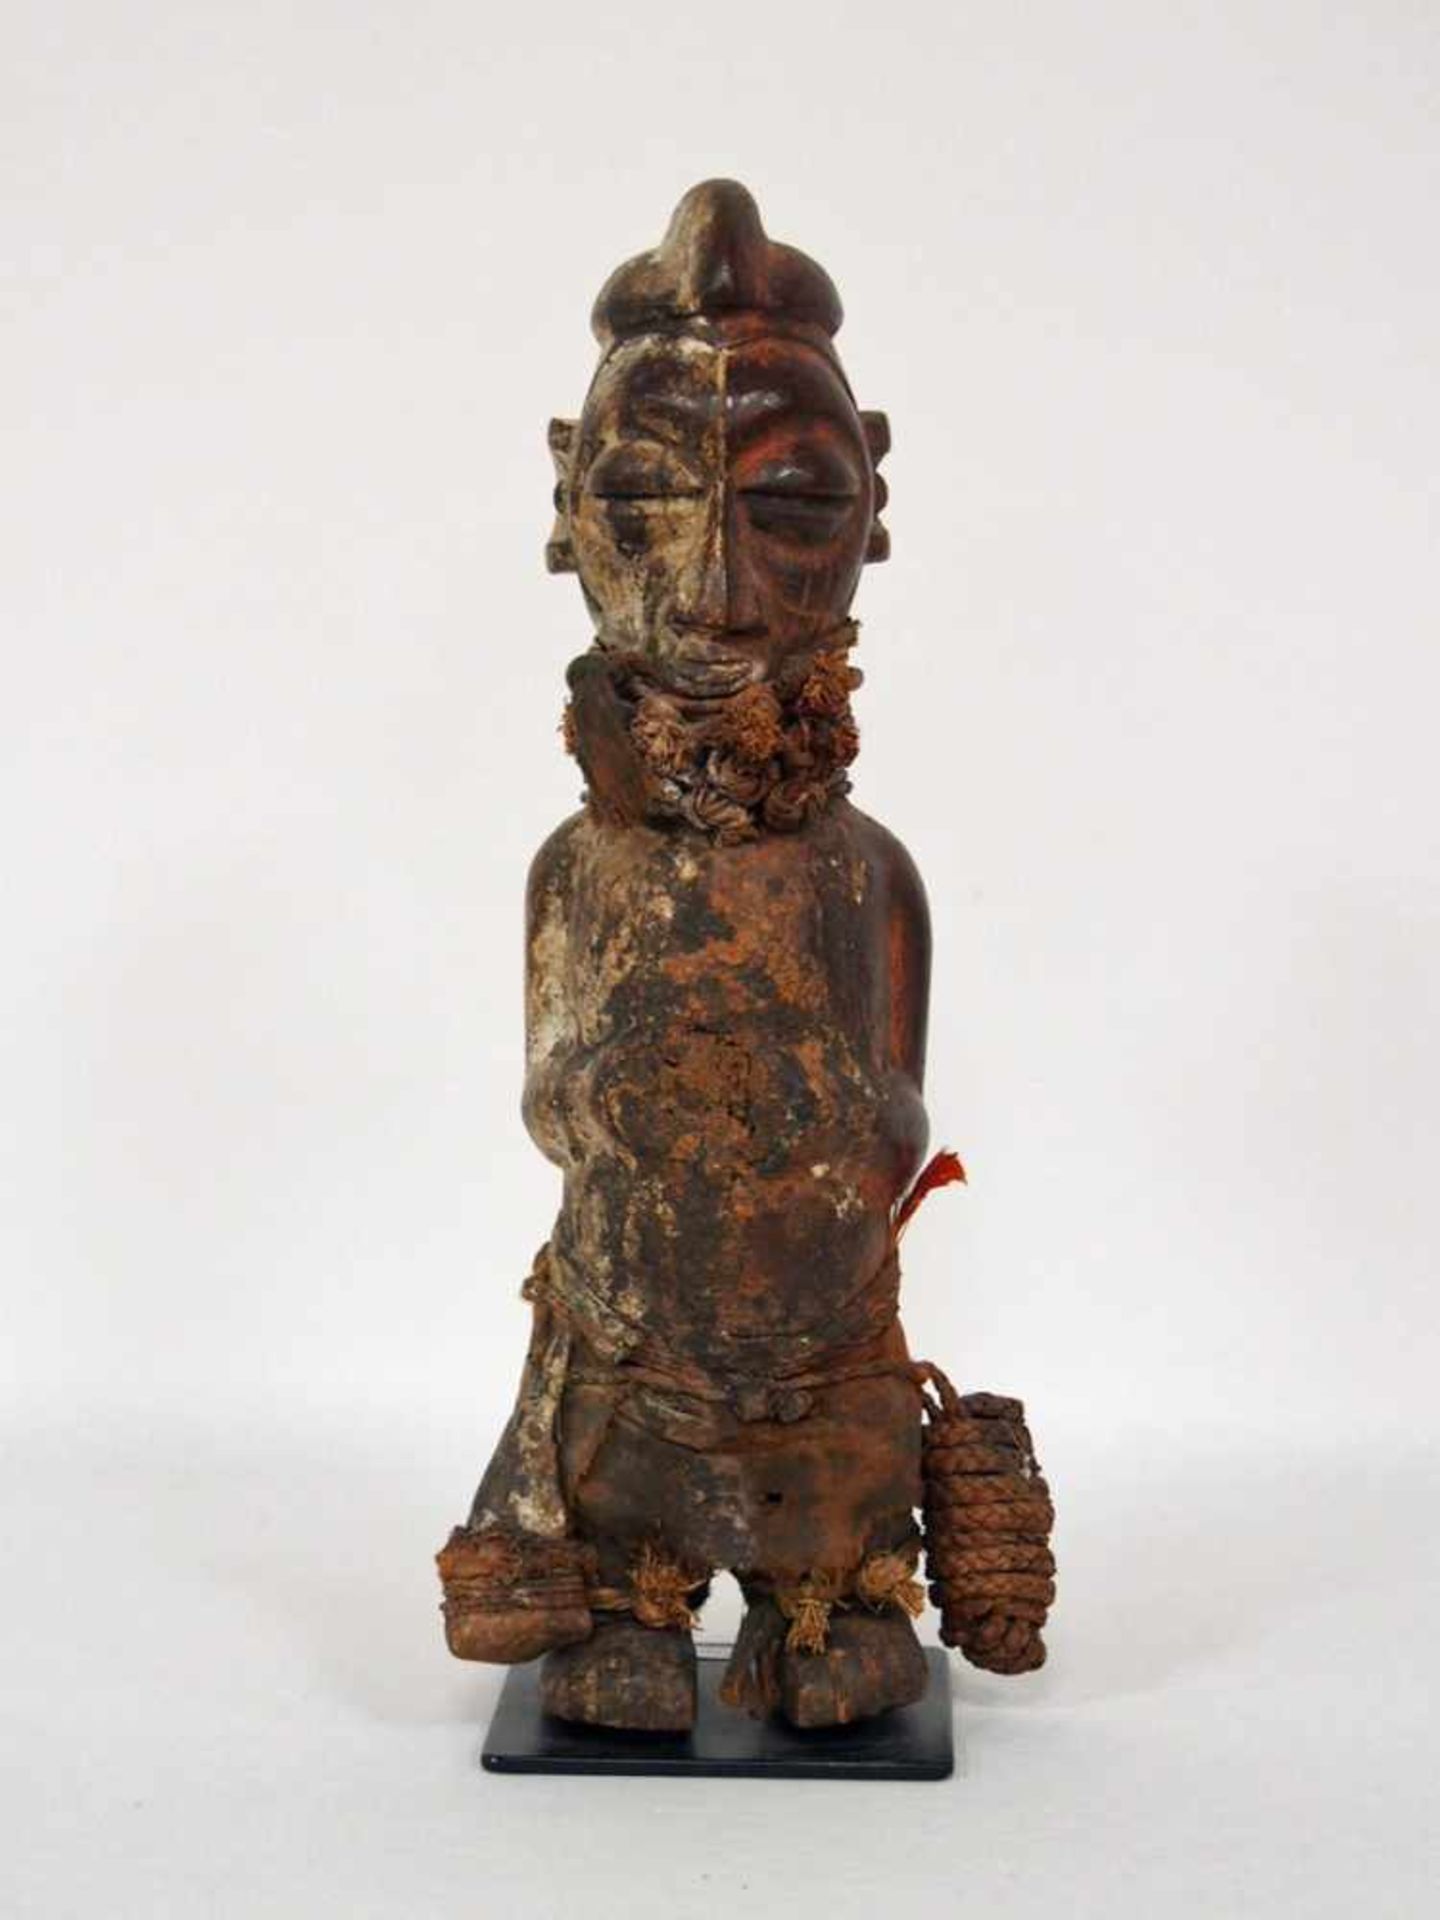 Statue eines MannesHolz, vollrund geschnitzt, farbig gefasst, Bast, gefärbtes Leinen, Yaka, Kongo,